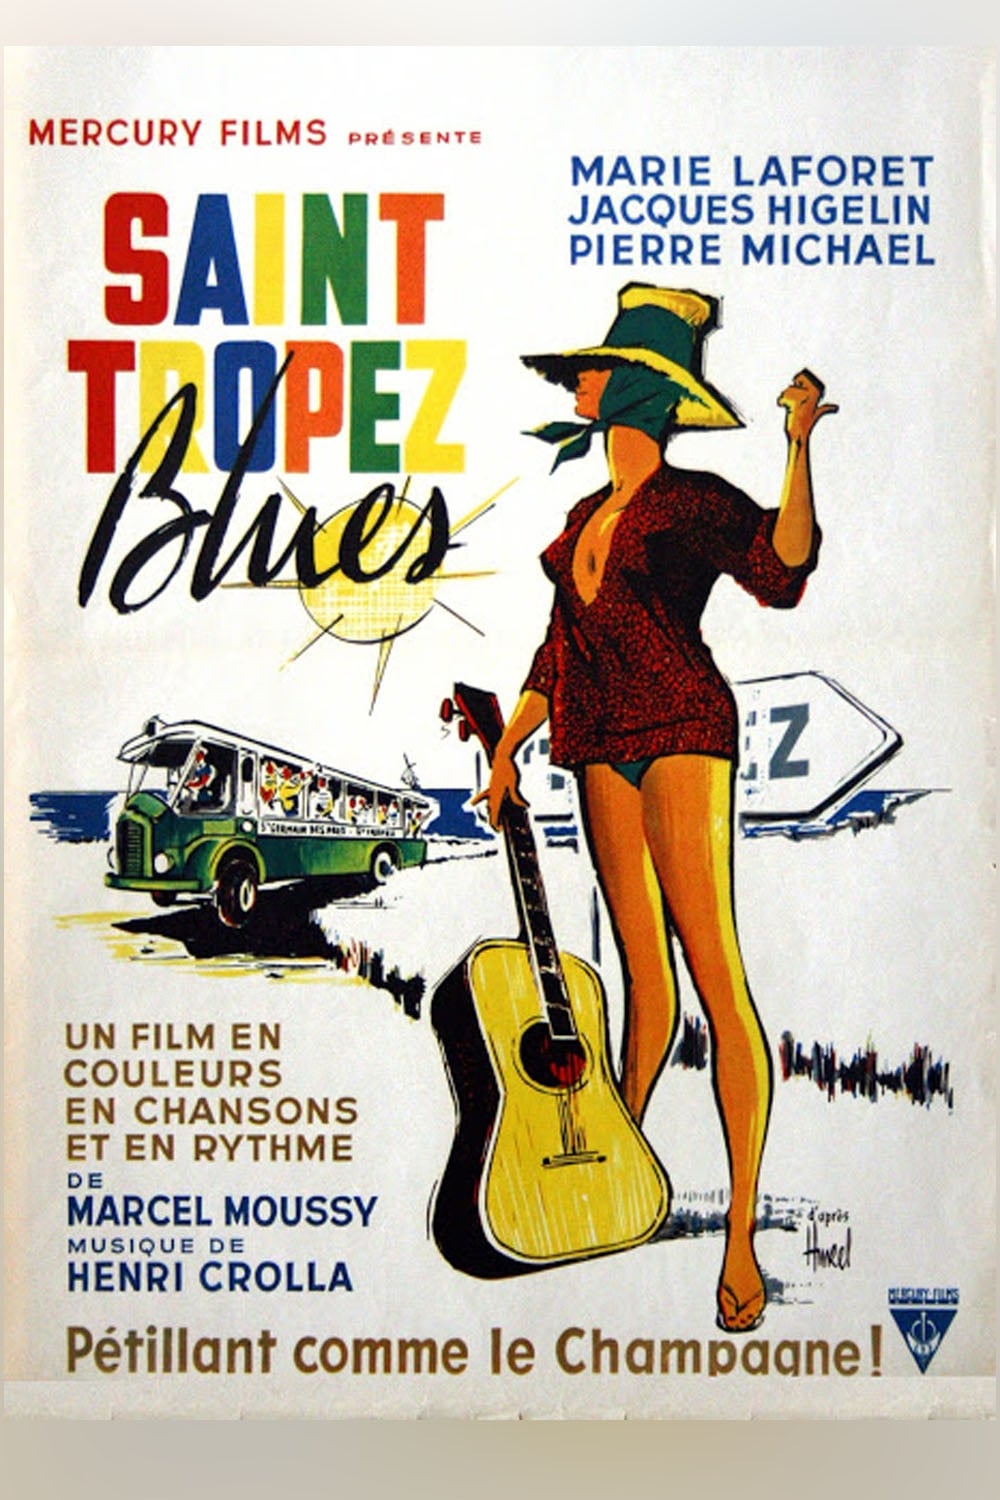 Saint-Tropez Blues (1961)